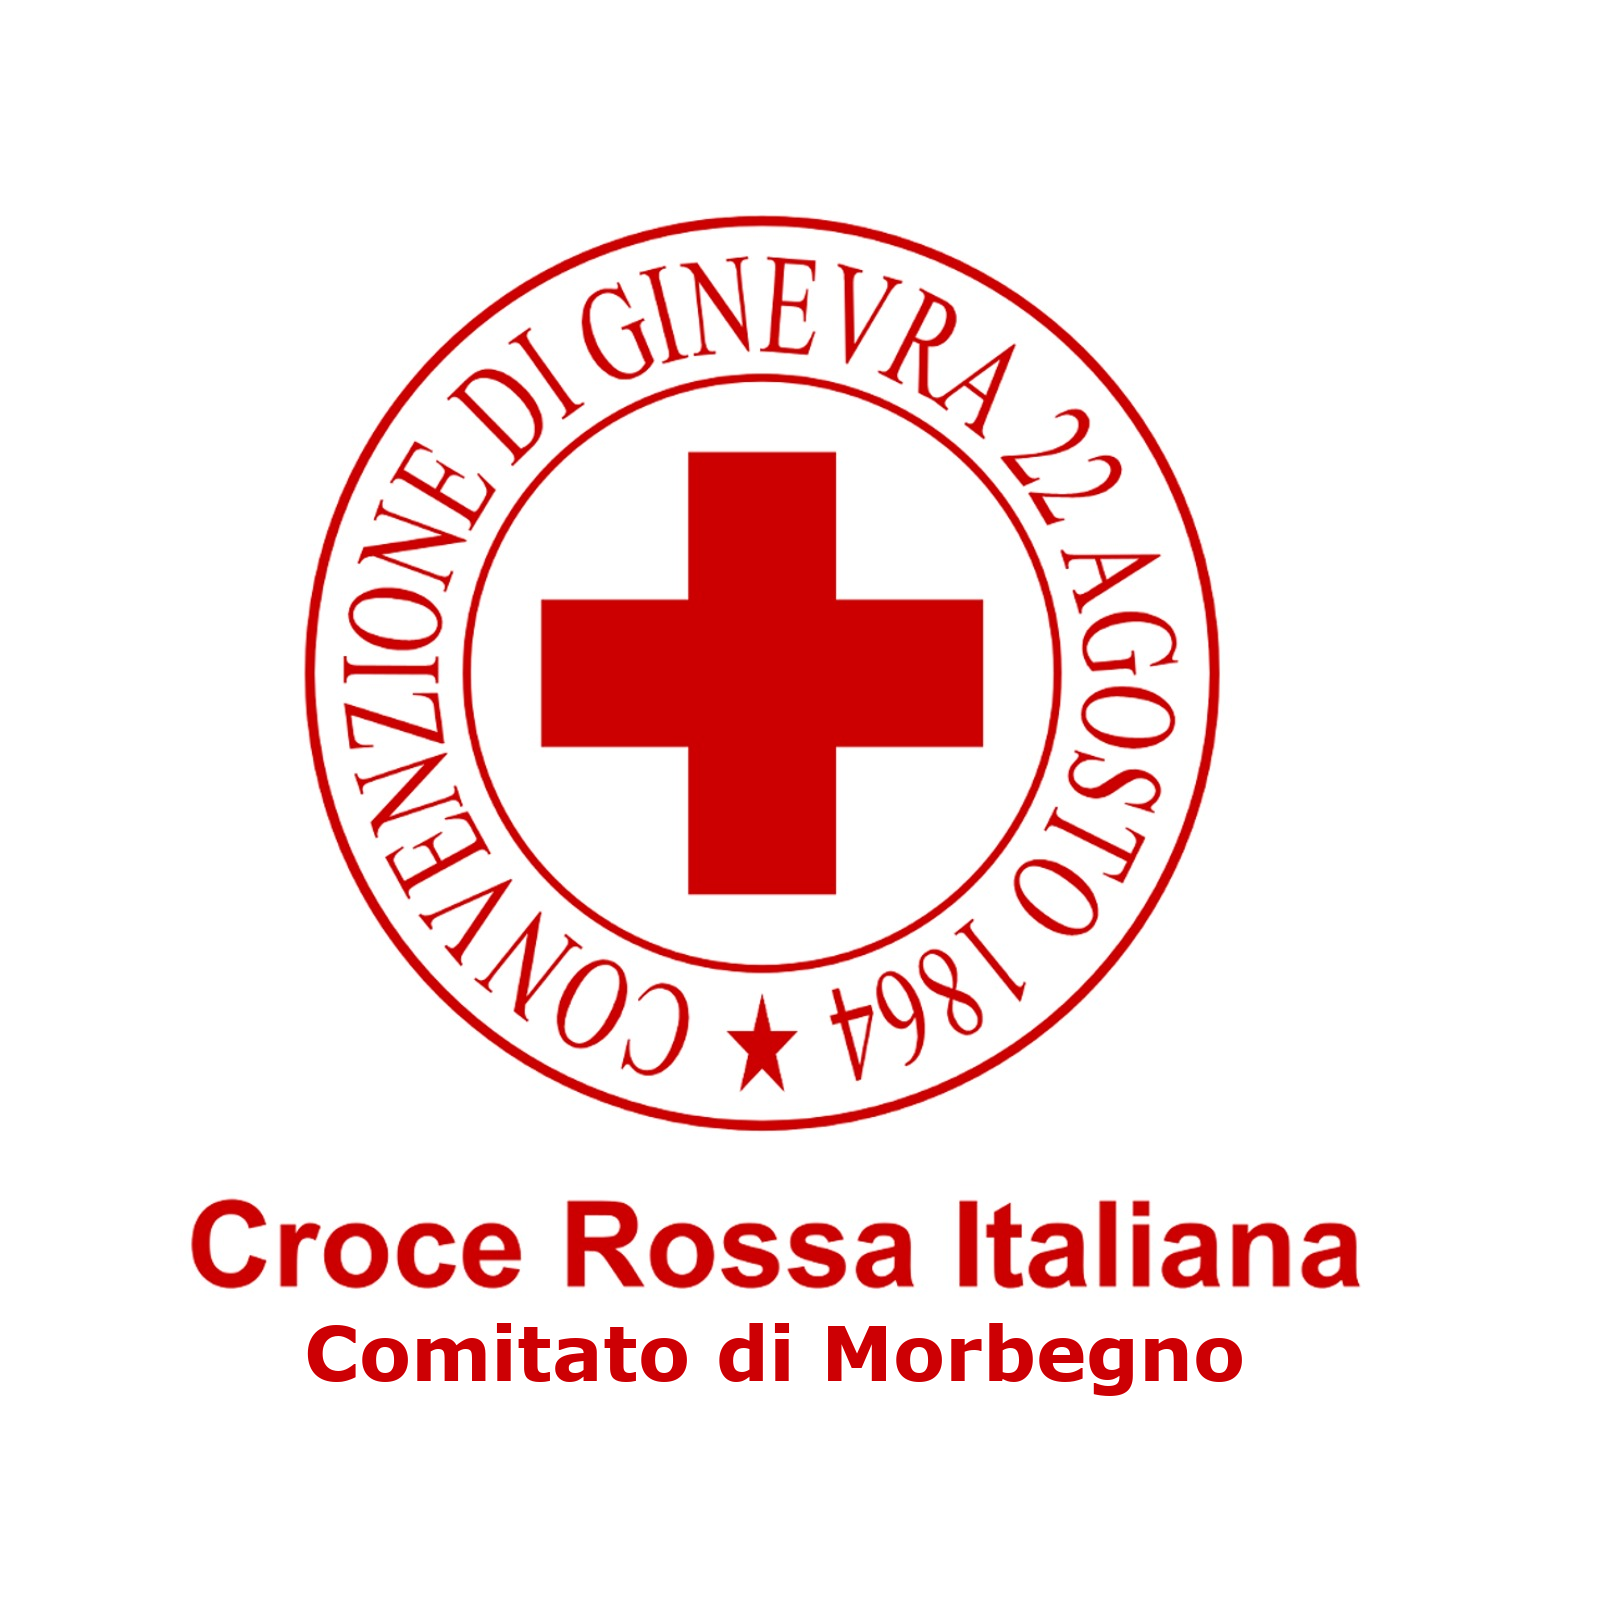 Croce Rossa Italiana - Comitato di Morbegno